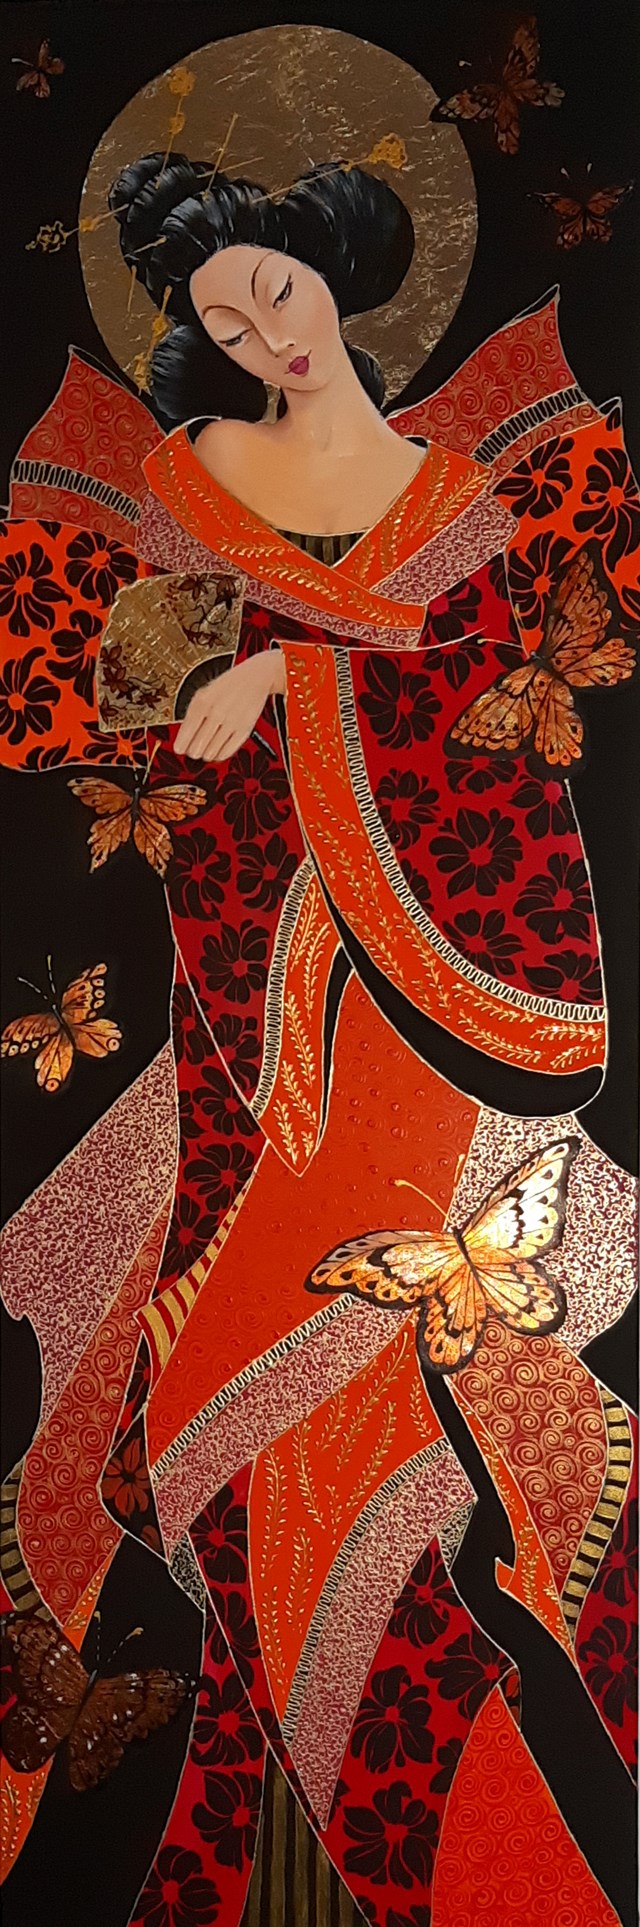 Living room painting by Iwona Wierkowska-Rogowska titled Geisha and butterflies